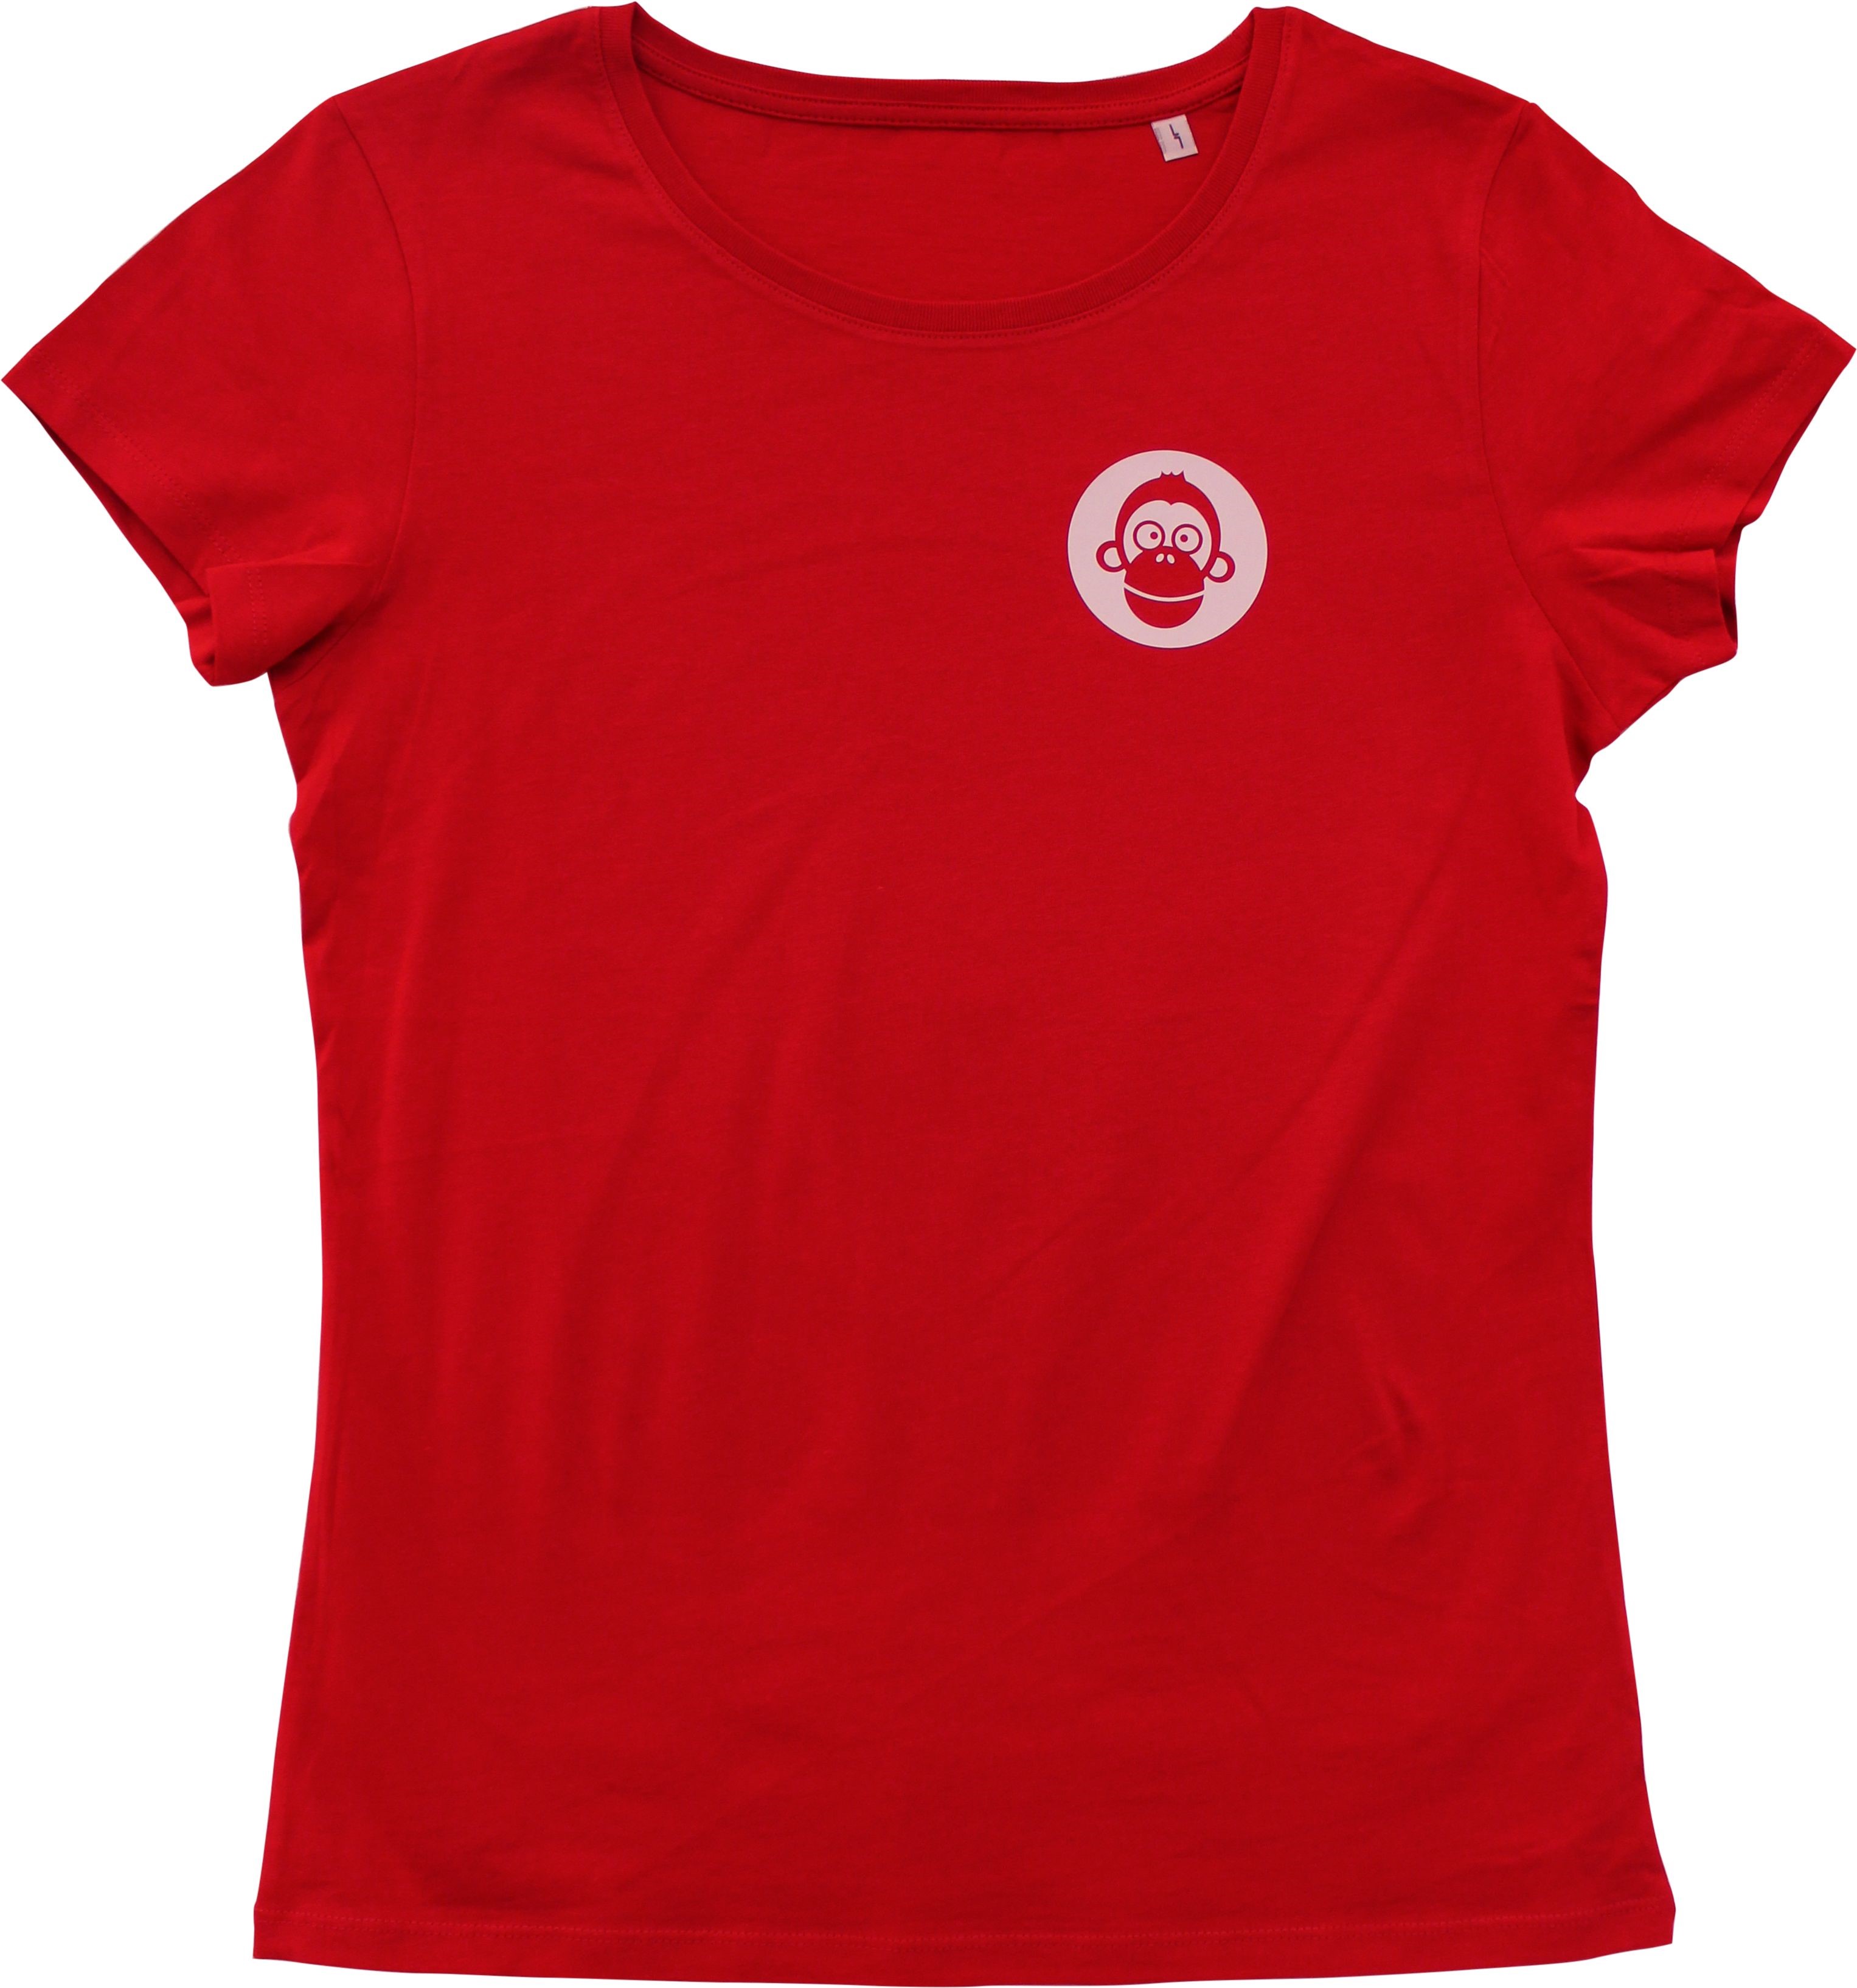 Blömboom - T-Shirt (rot, Größe: XL Damen)